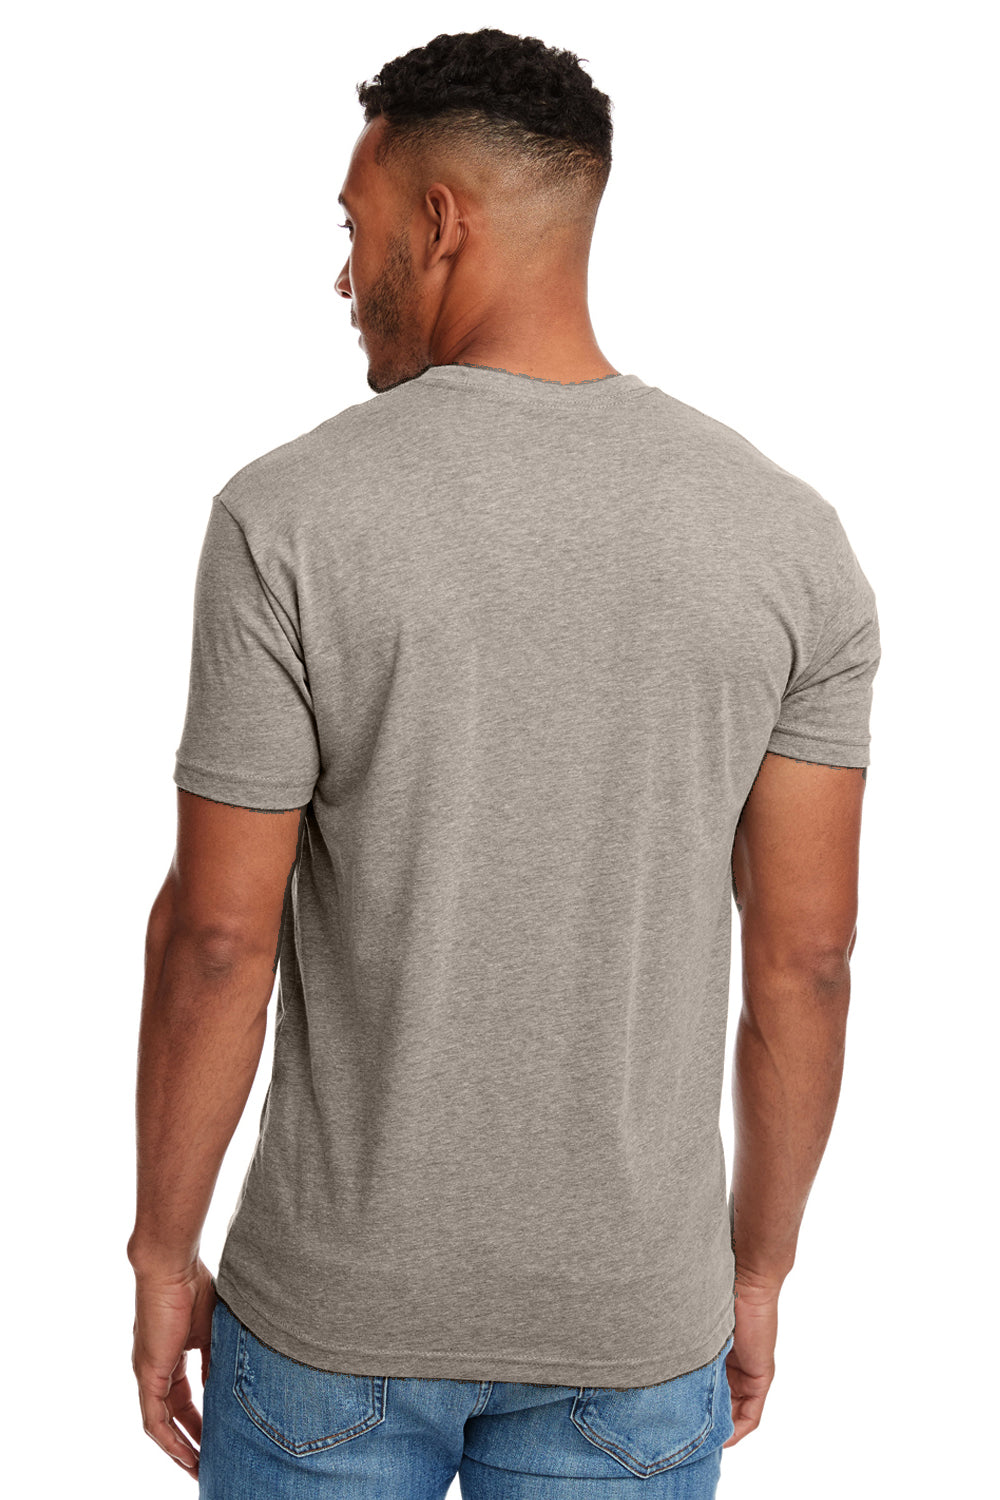 Next Level N6210 Mens CVC Jersey Short Sleeve Crewneck T-Shirt Warm Grey Back